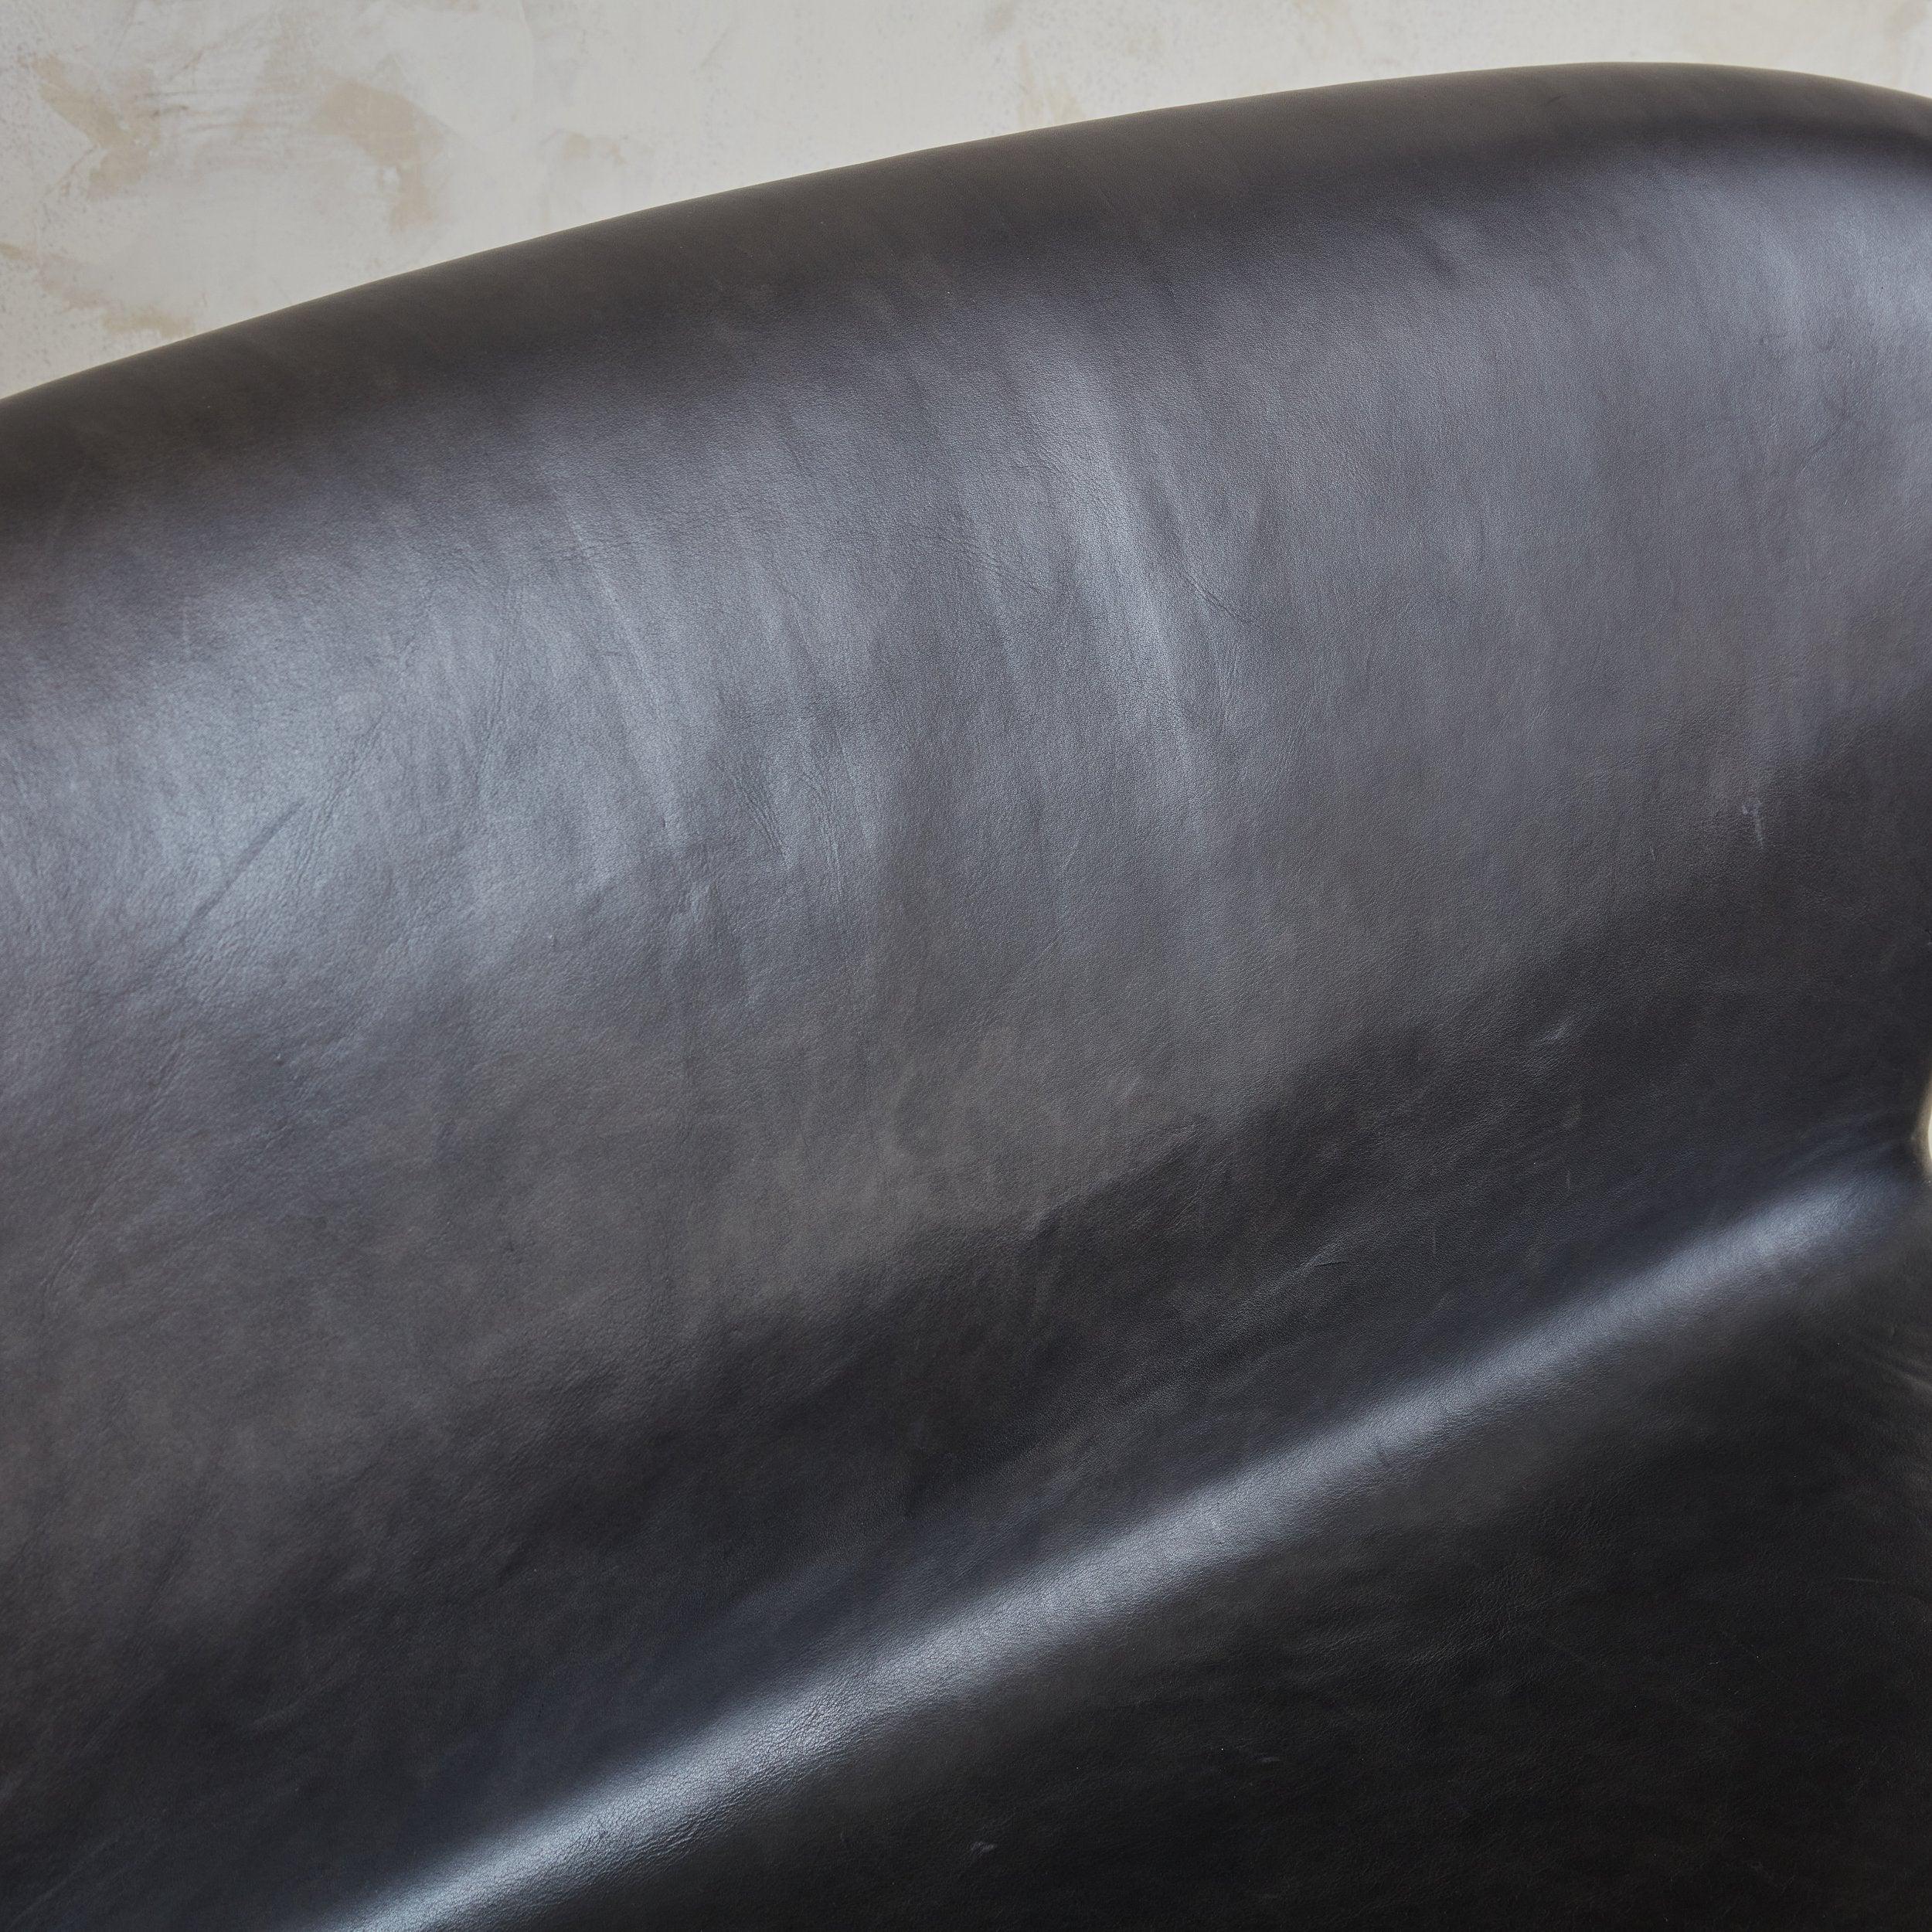 Canapé cygne danois moderne, modèle 3321, conçu par Arne Jacobsen au XXe siècle. Influencé par l'expérience architecturale de Jacobsen, ce canapé deux places présente des lignes fluides et une présence sculpturale. Il se compose d'une base